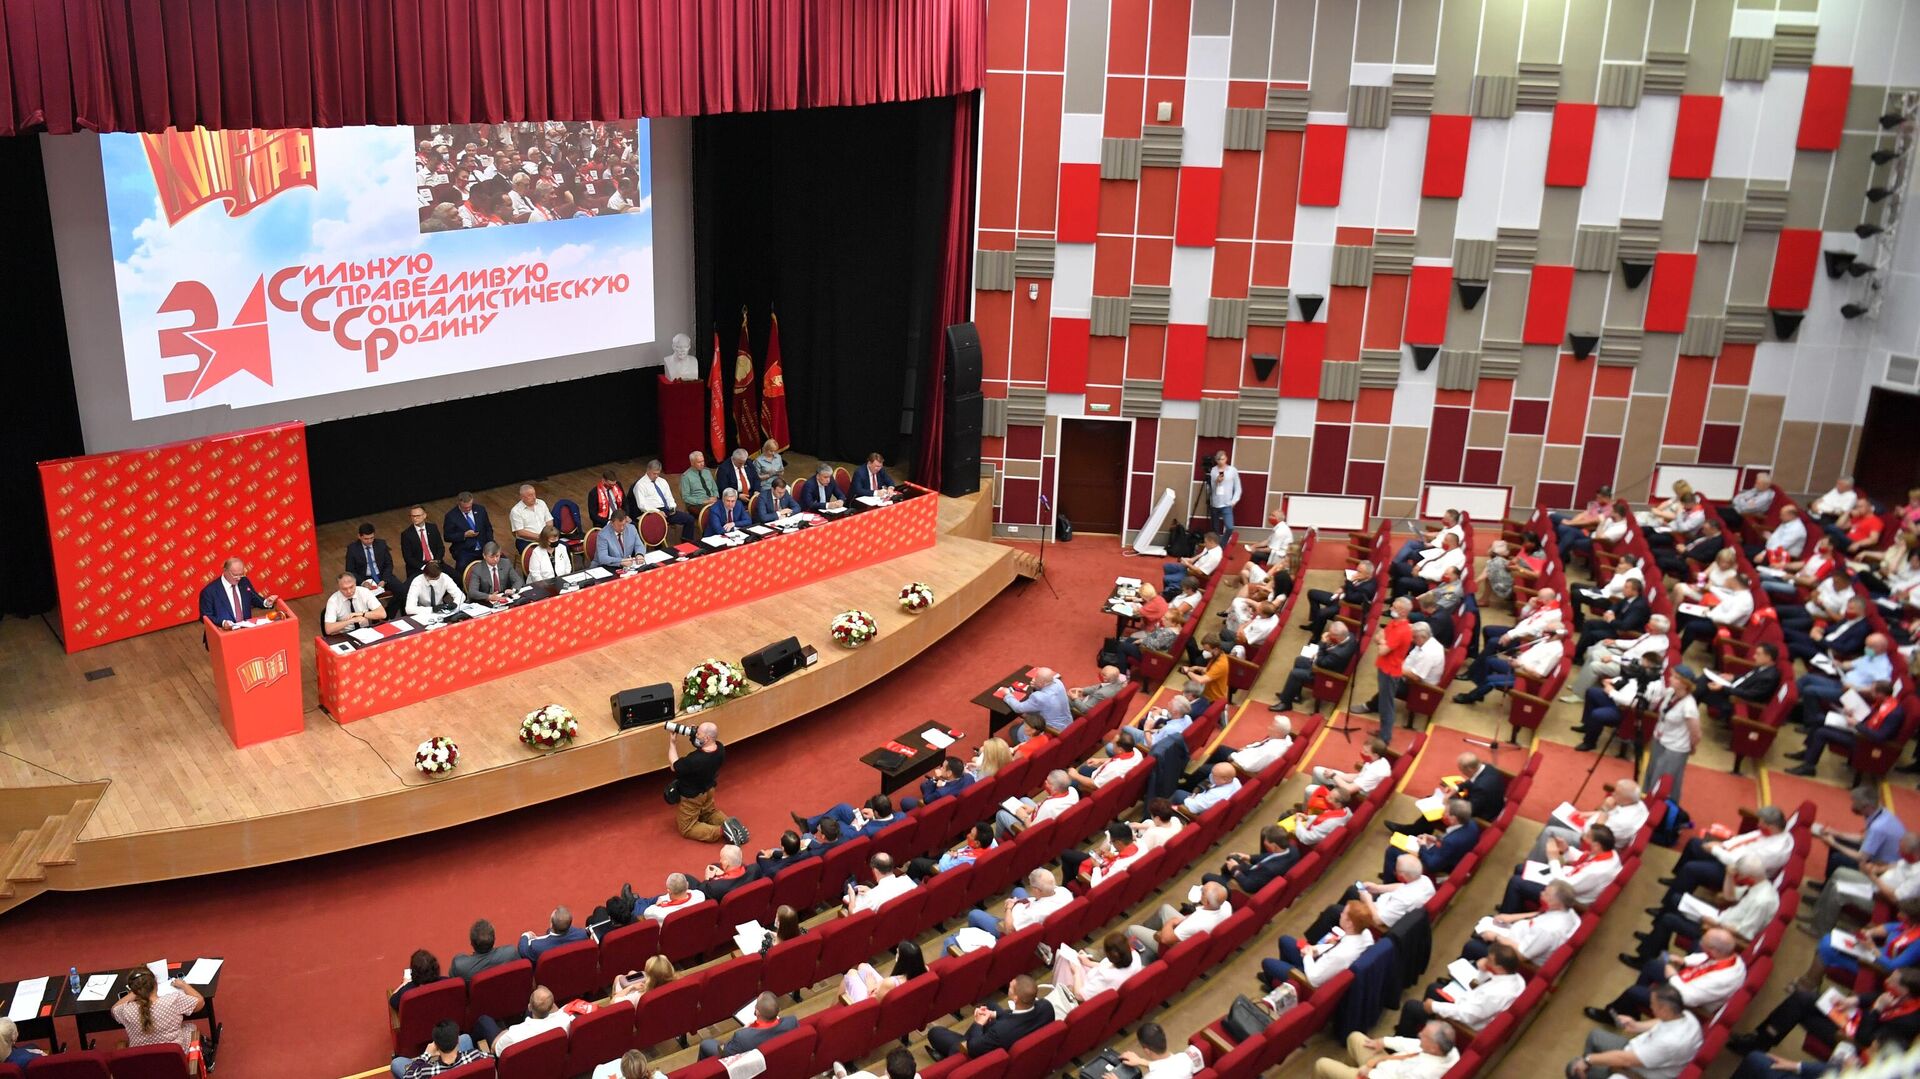 Прилепин договорился о парламентской коалиции с представителями левых сил